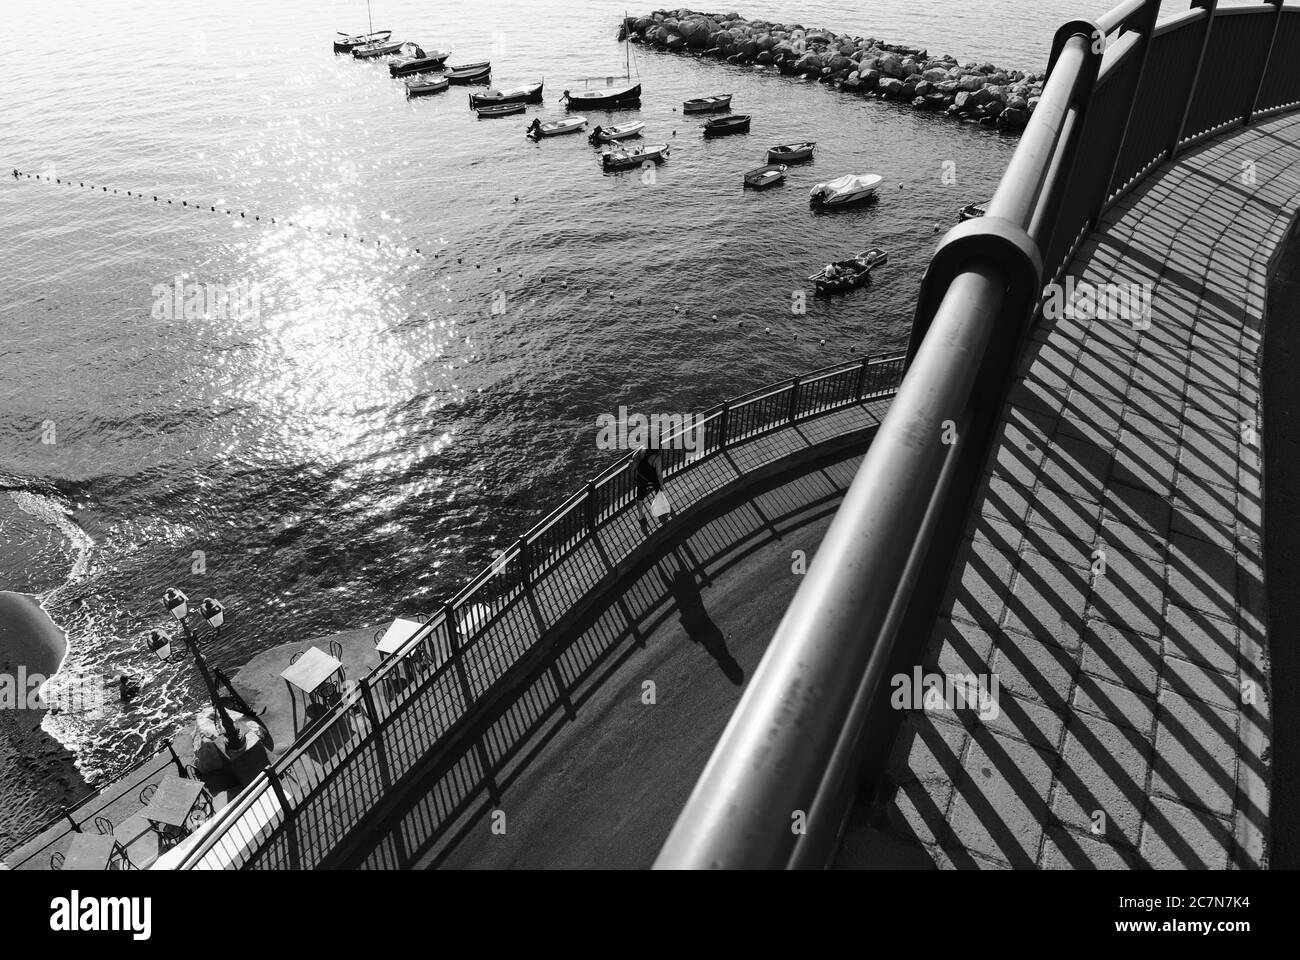 Il sole in bianco e nero riflette sul mare, i dettagli dell'architettura, le ringhiere getta lunghe ombre sul marciapiede dove una donna cammina lungo Amalfi C. Foto Stock